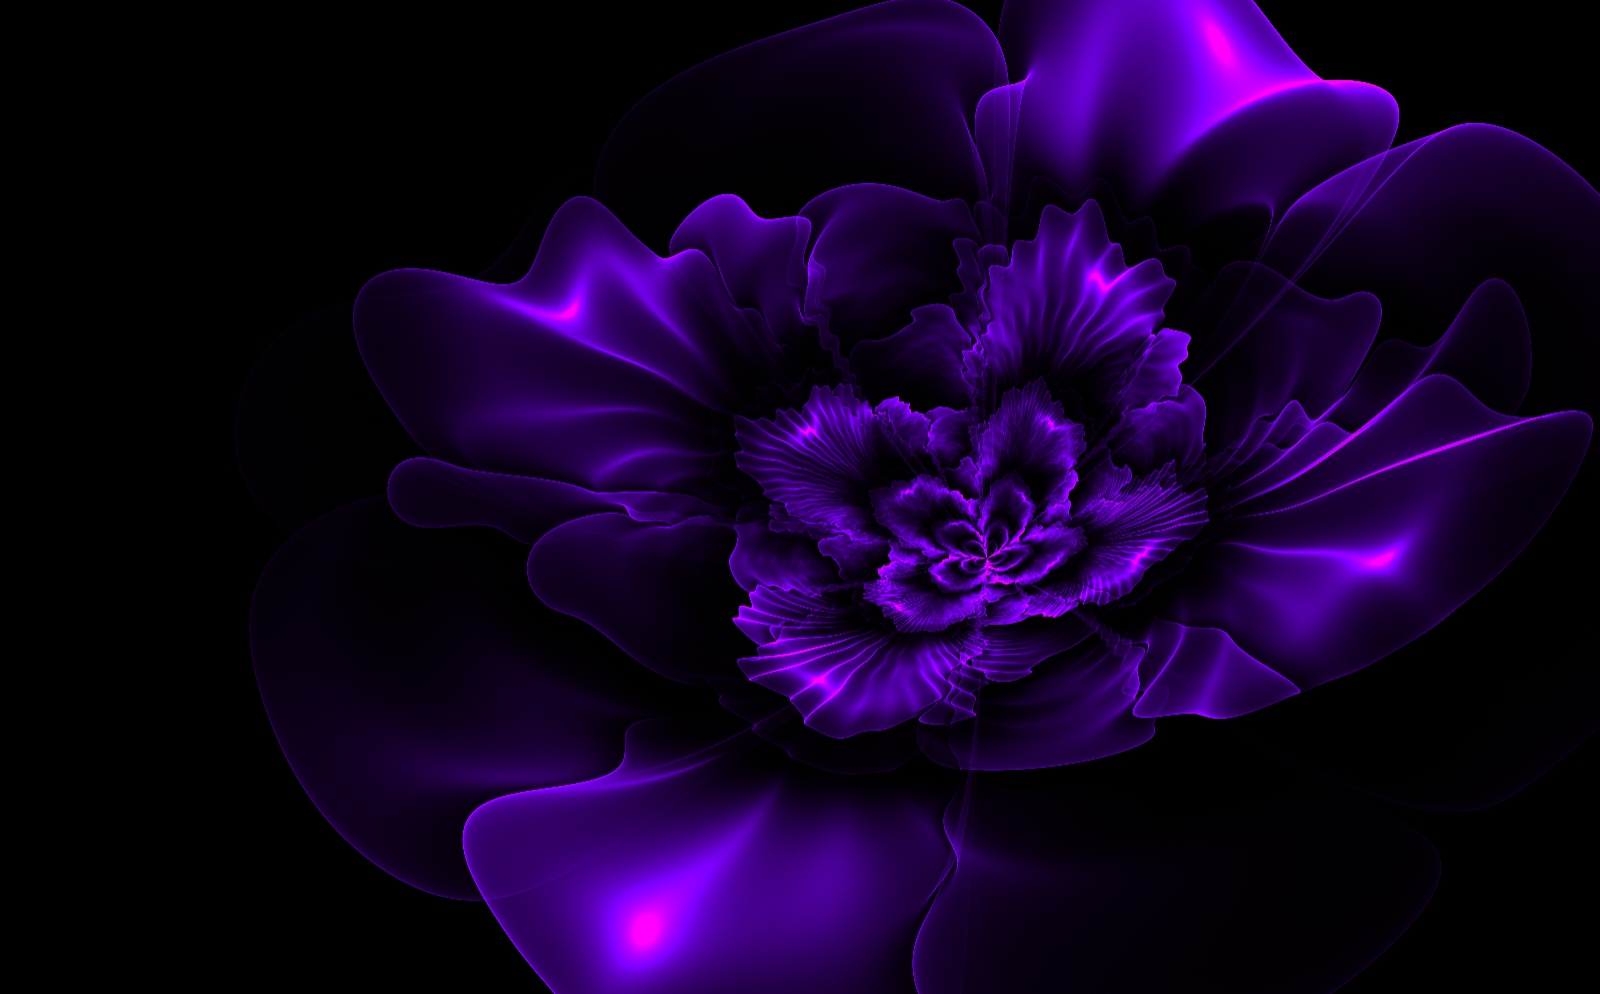 Dark Purple Roses Wallpaper - WallpaperSafari